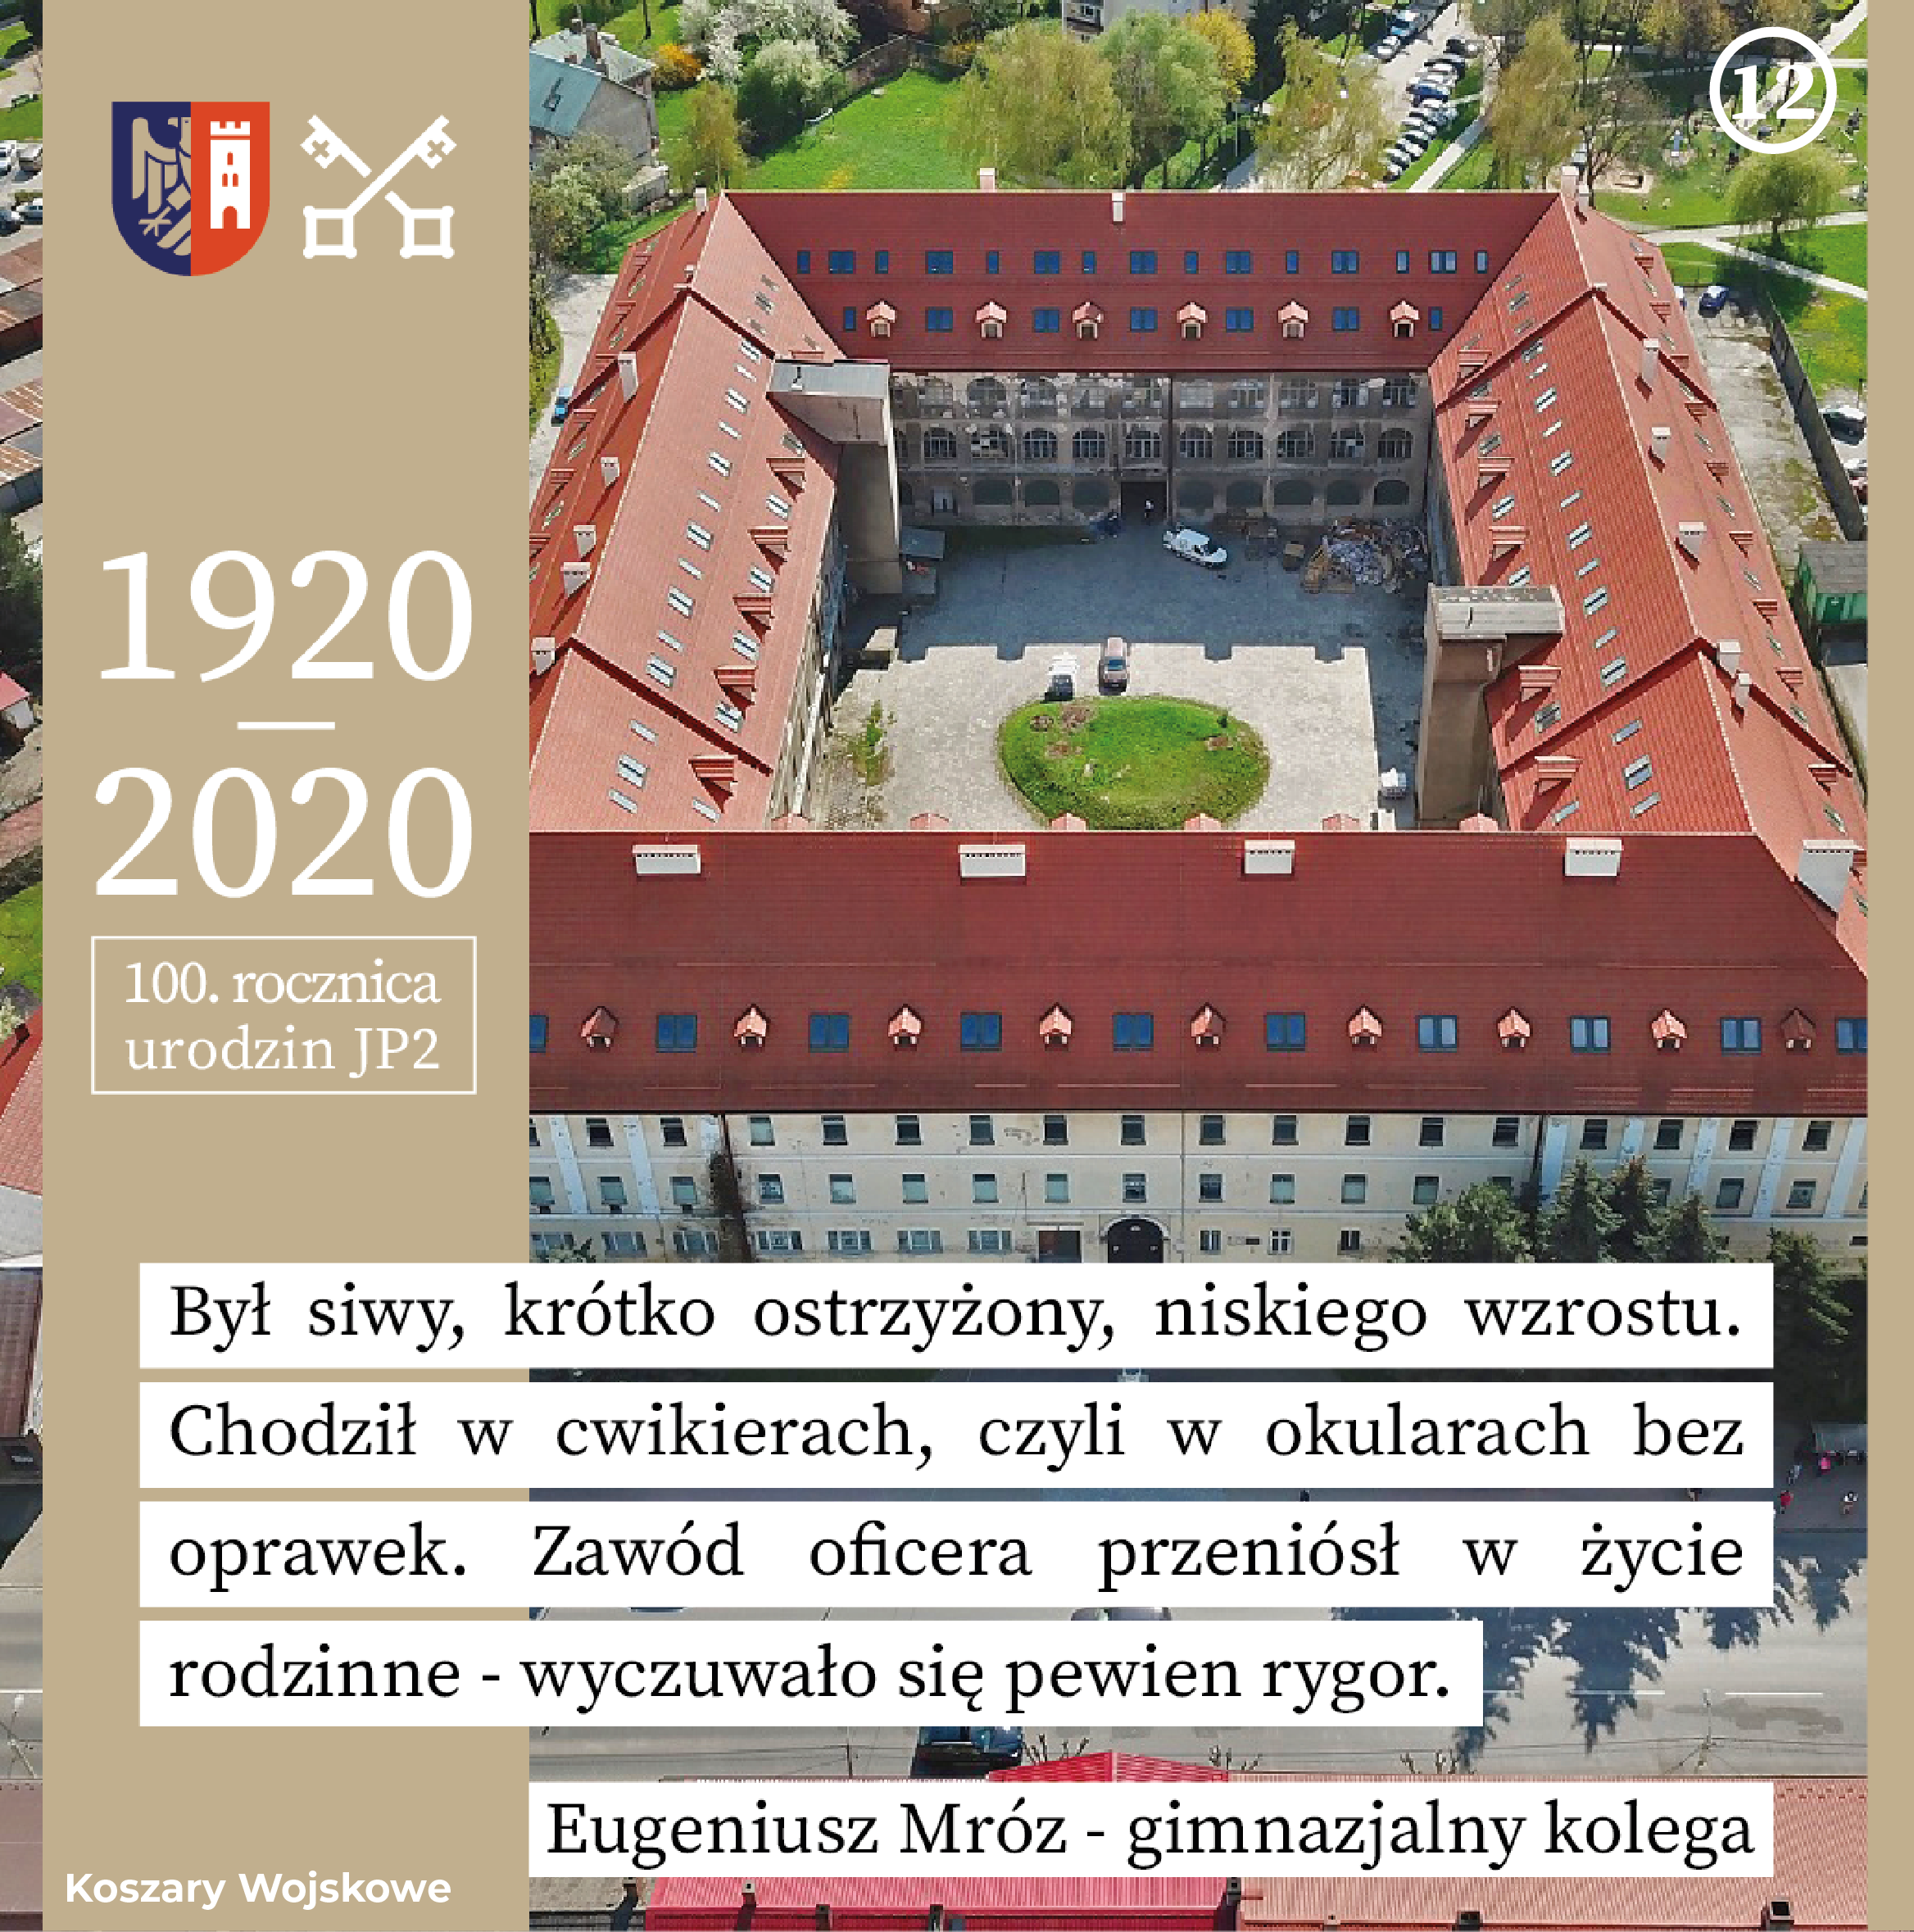 grafika ze zdjęciem dawnych koszar wojskowych w Wadowicach